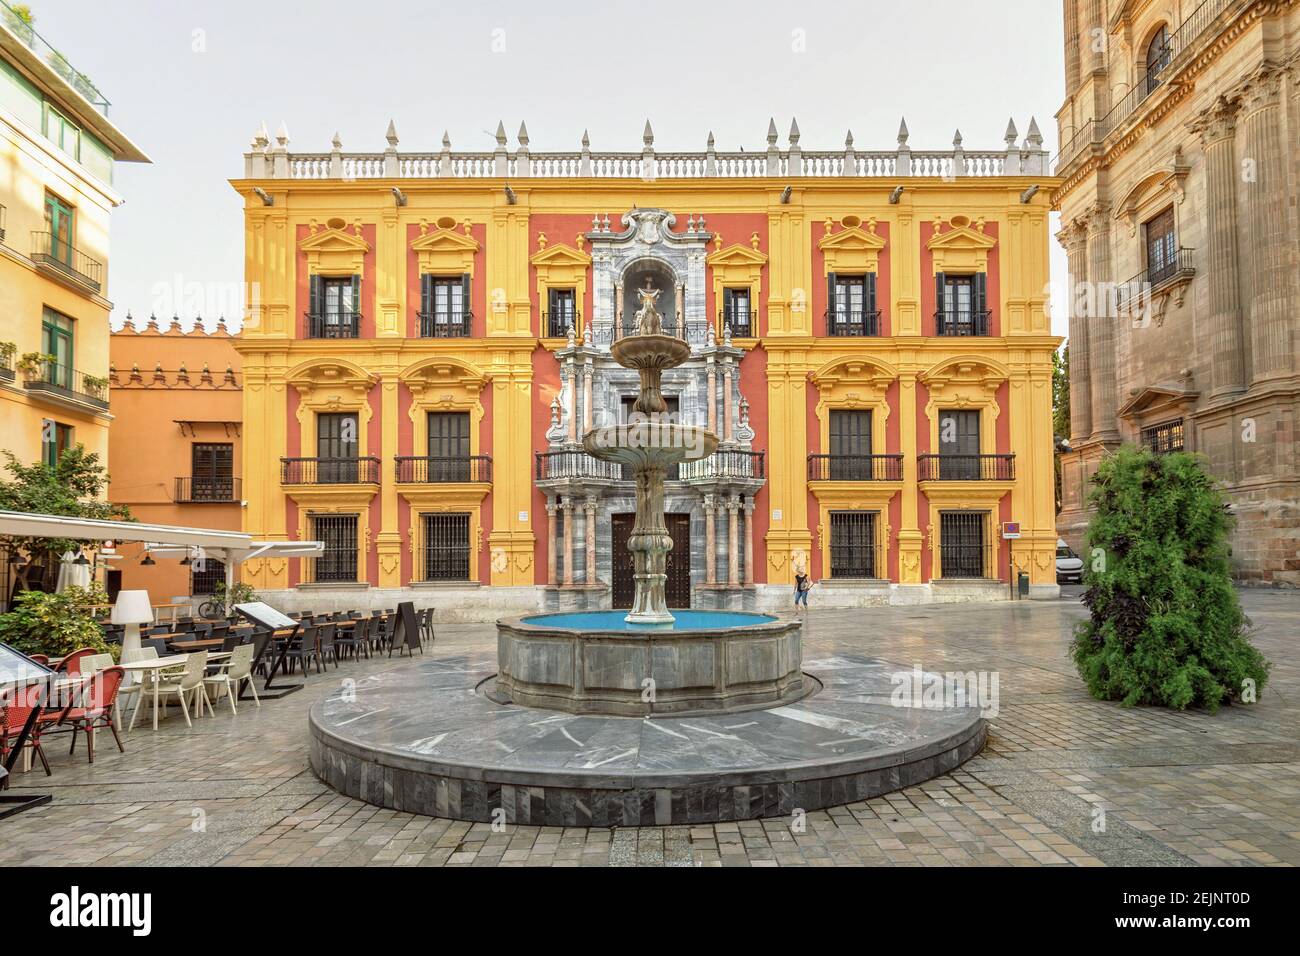 Plaza del Obispo in Malaga, Spain Stock Photo